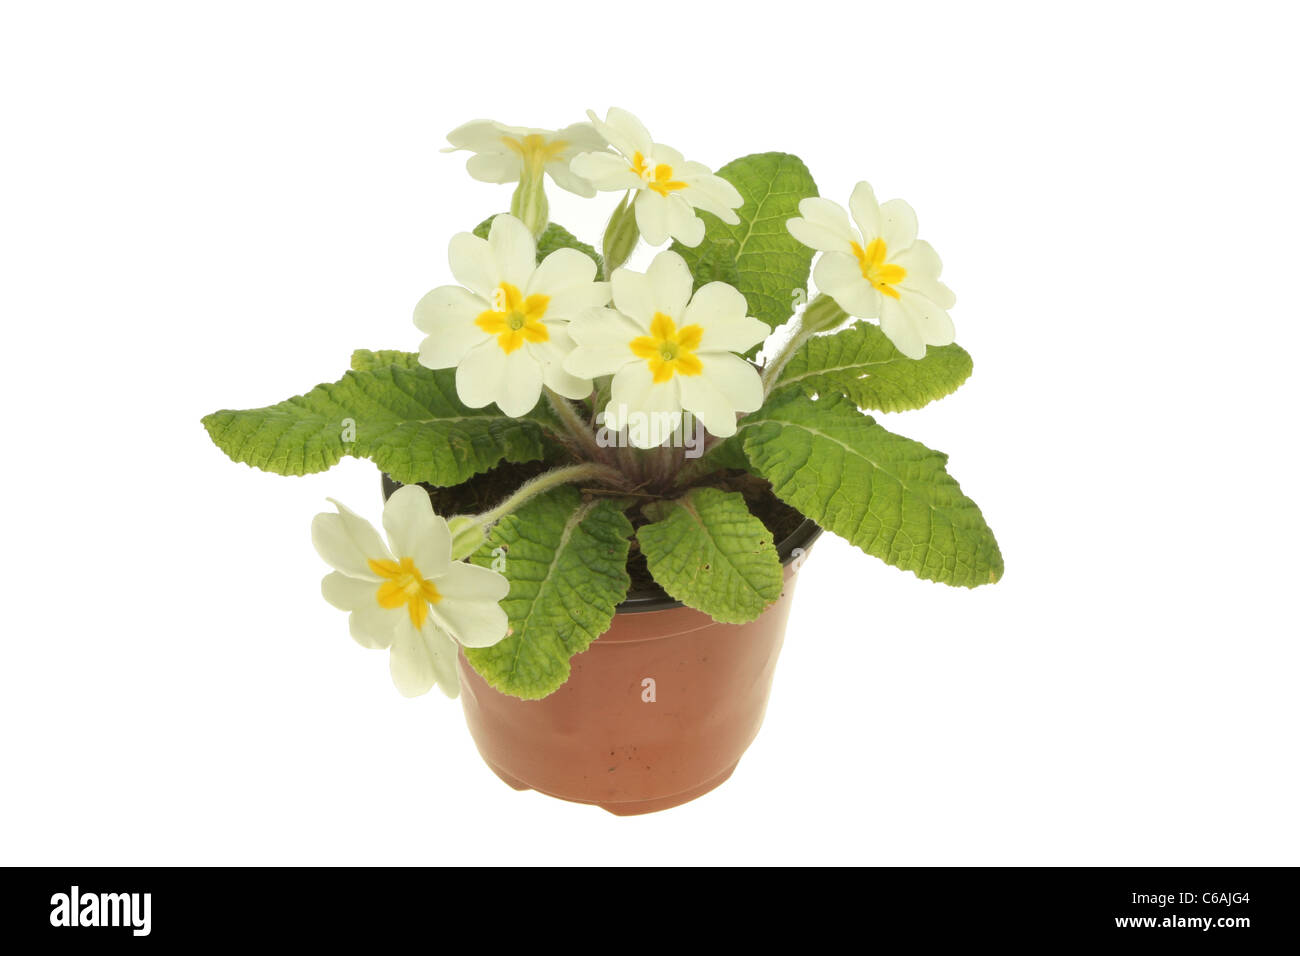 Primrose pianta con fiori crema isolata contro bianco Foto Stock